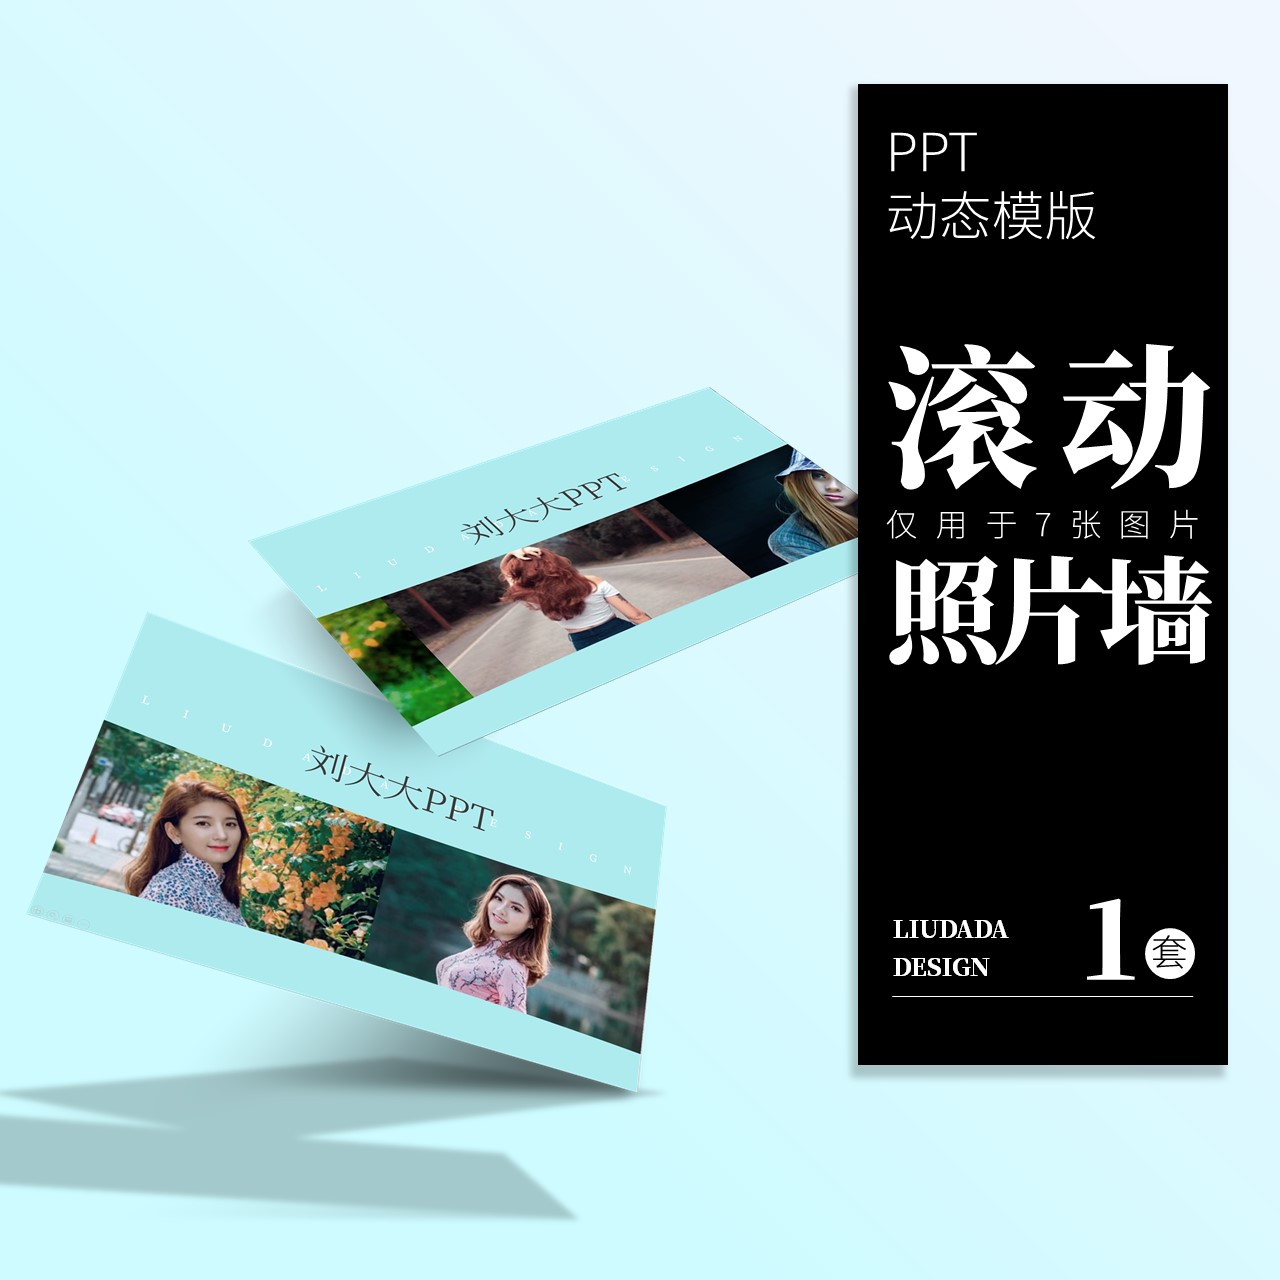 刘大大PPT丨仅7张图片无限循环滚动轮播照片墙动画模板素材